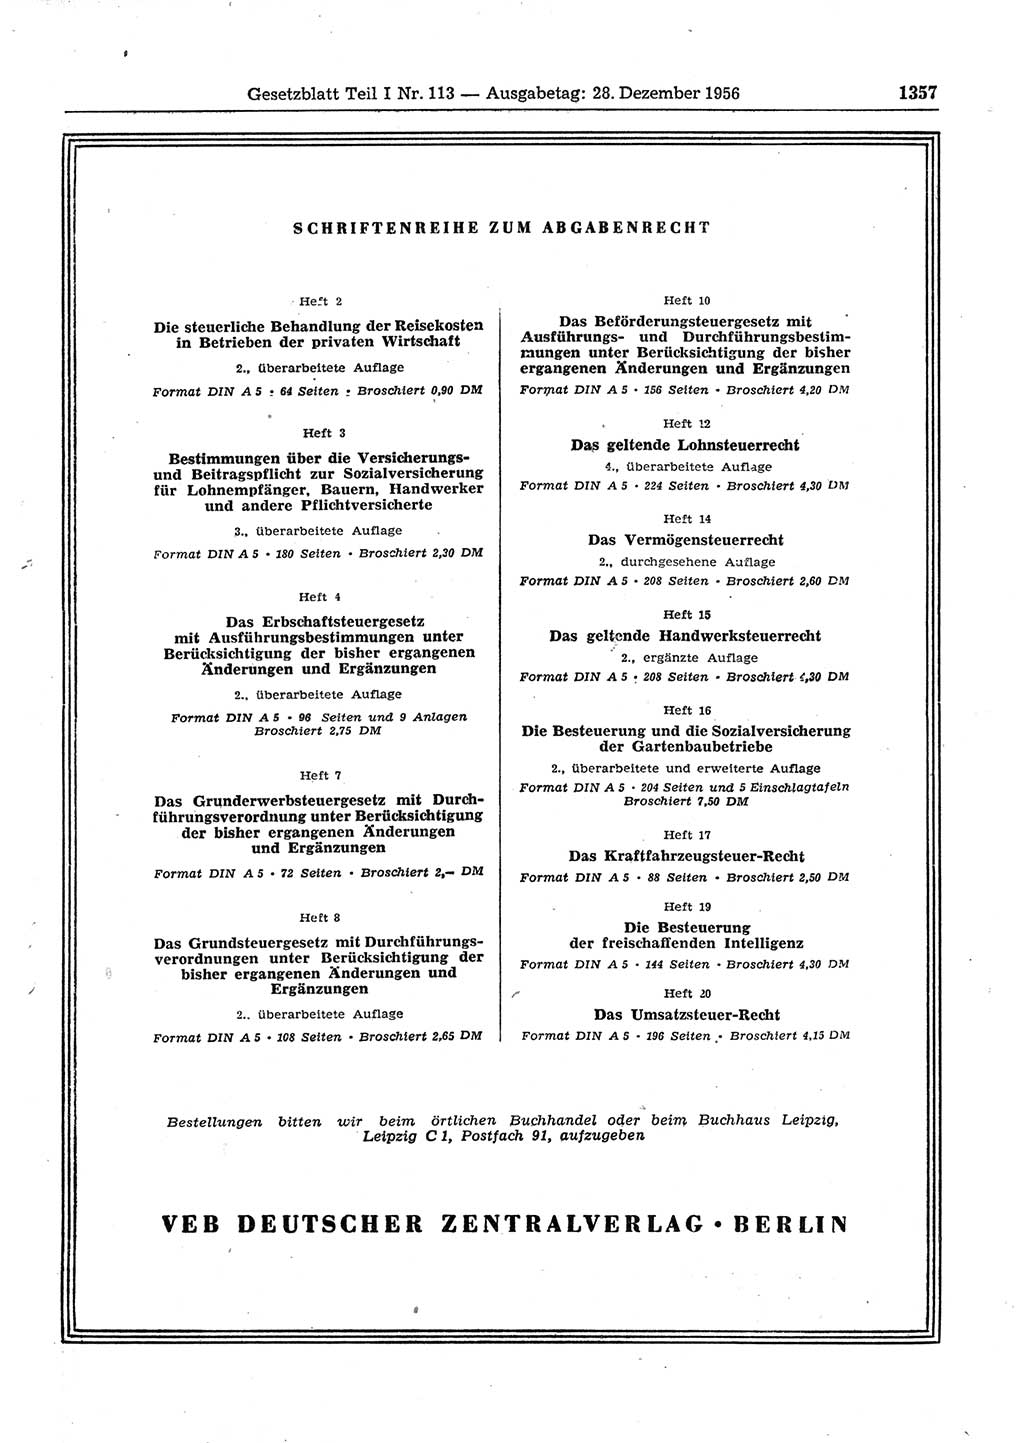 Gesetzblatt (GBl.) der Deutschen Demokratischen Republik (DDR) Teil Ⅰ 1956, Seite 1357 (GBl. DDR Ⅰ 1956, S. 1357)